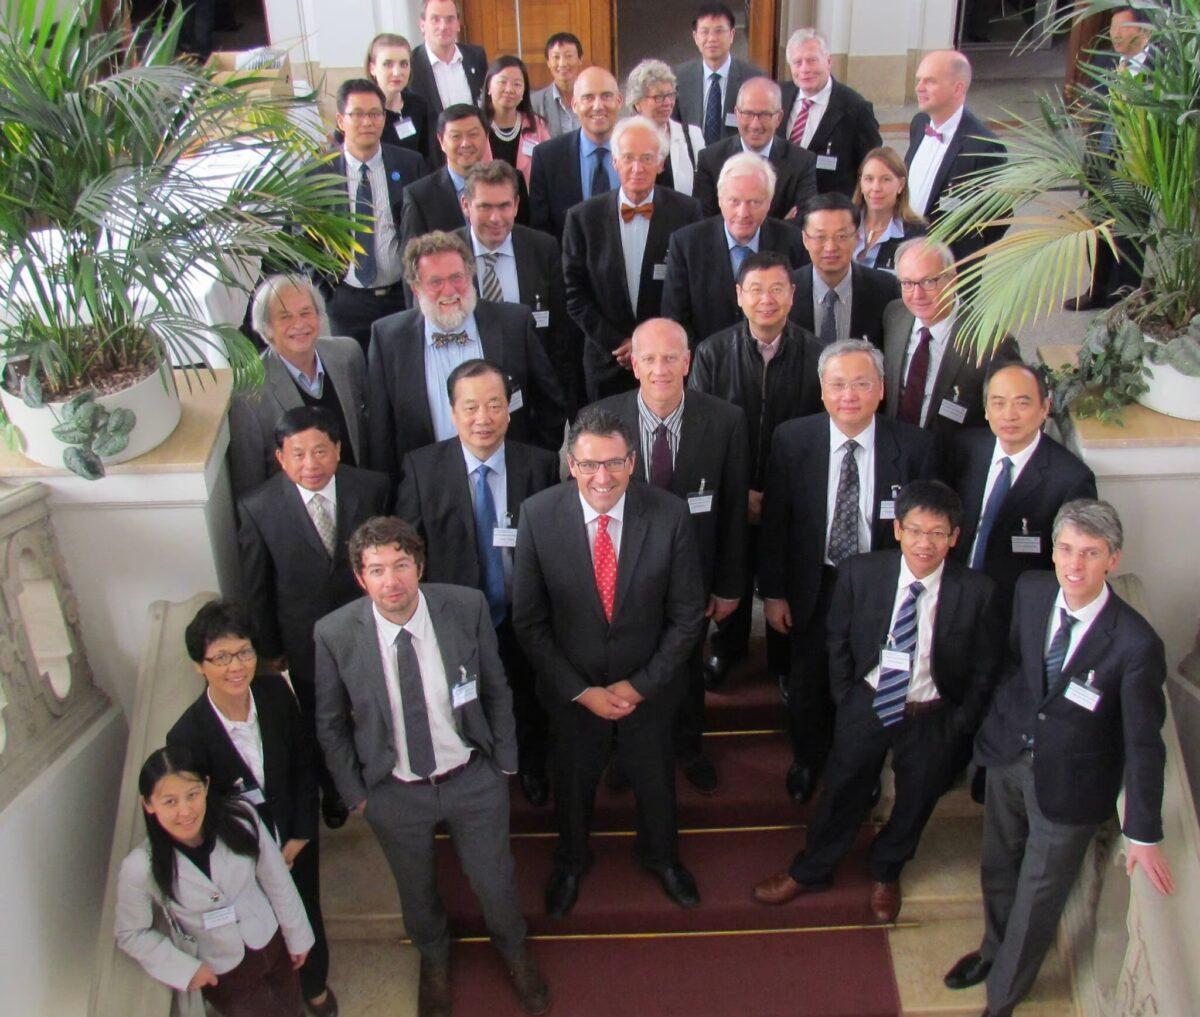 The Sino-German Symposium on Infectious Diseases held in Berlin in 2015. (Screenshot)